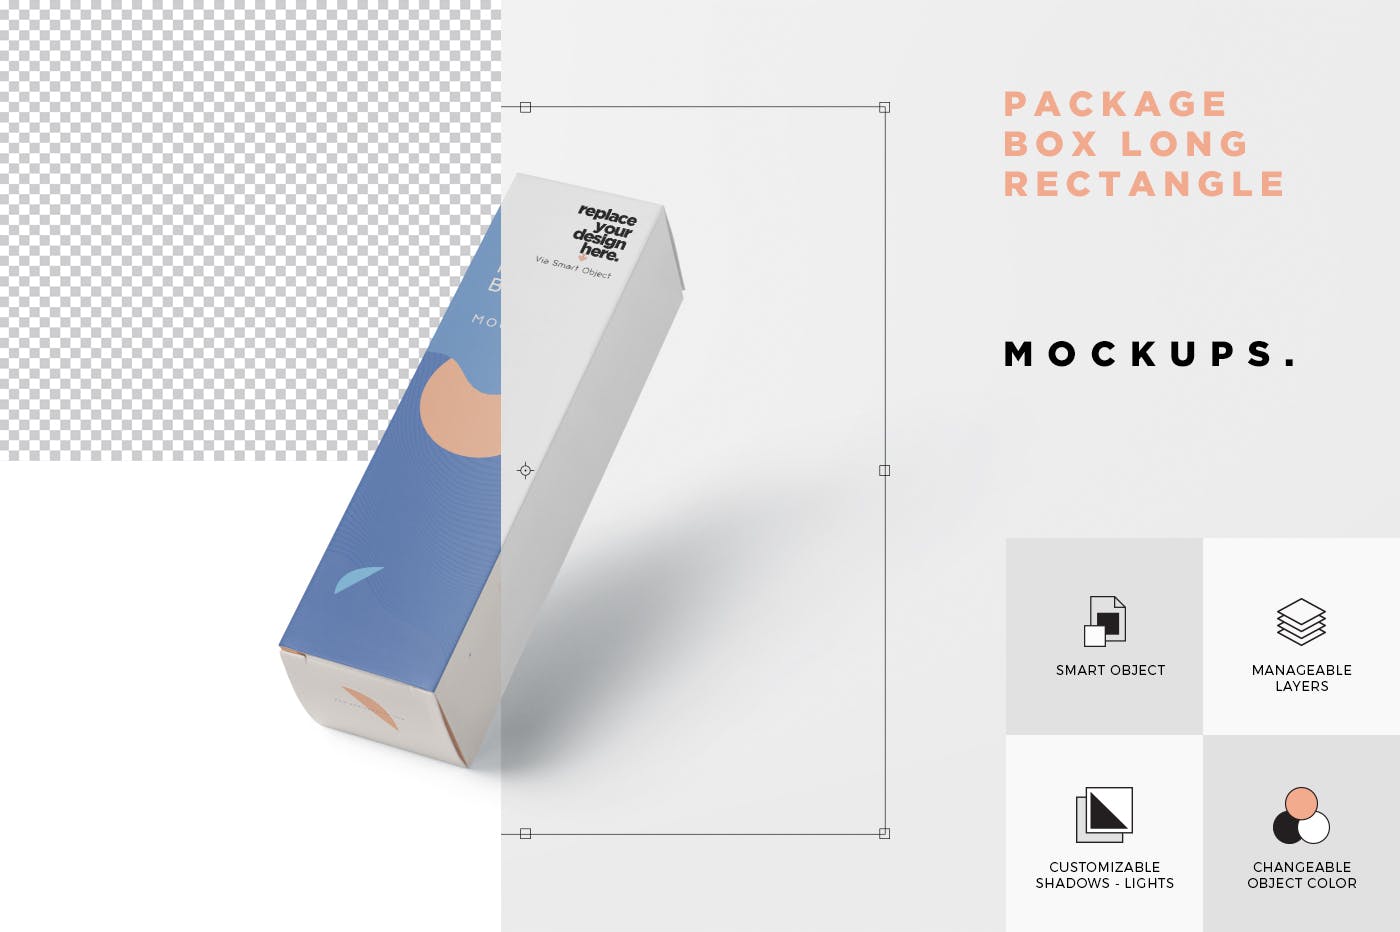 长矩形包装盒外观设计素材中国精选 Package Box Mock-Up – Long Rectangle Shape插图(4)